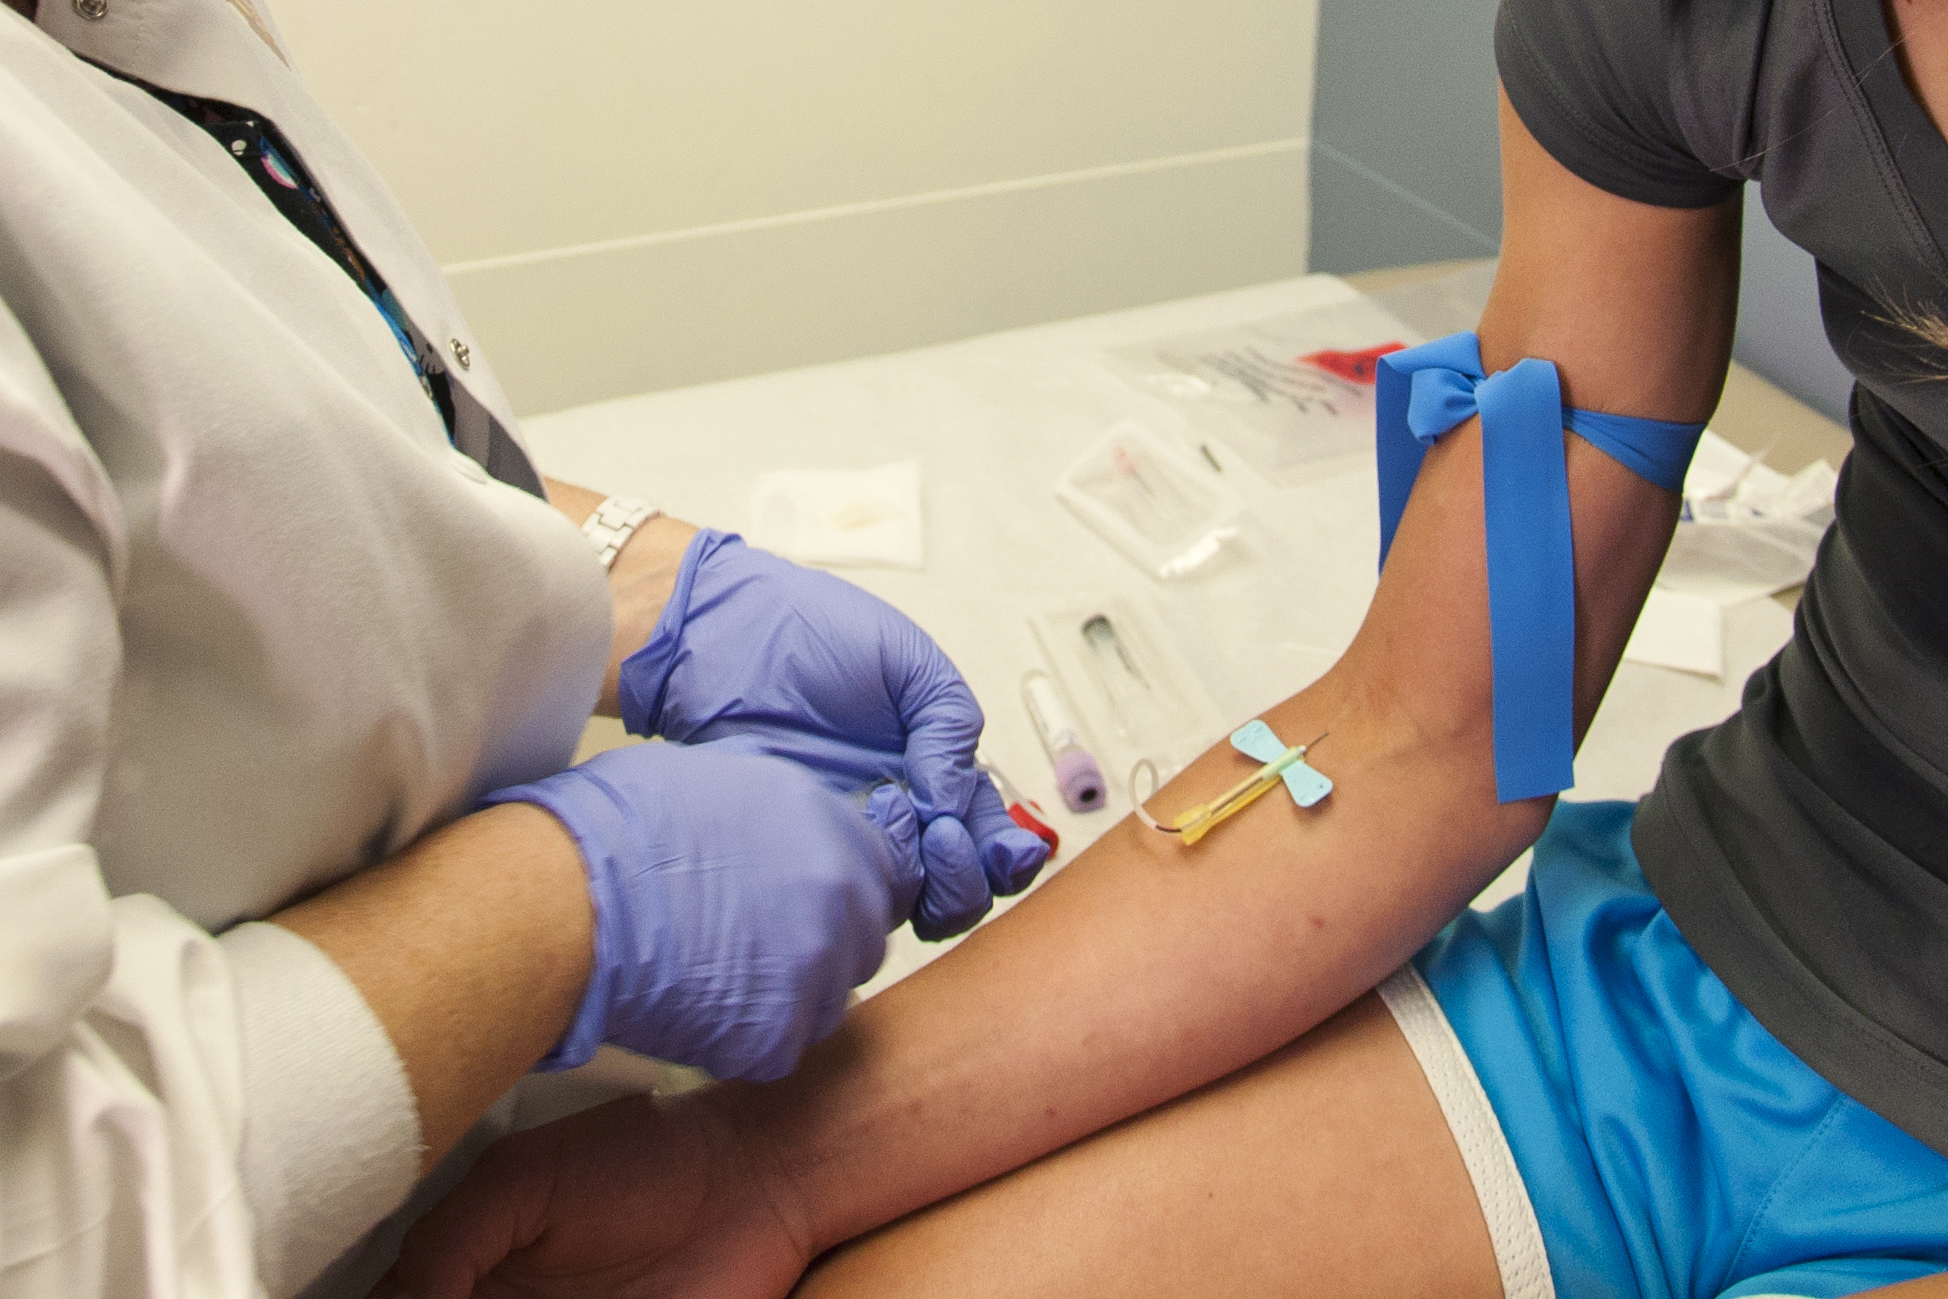 WVU researcher studies quick blood test to help diagnose blood clots